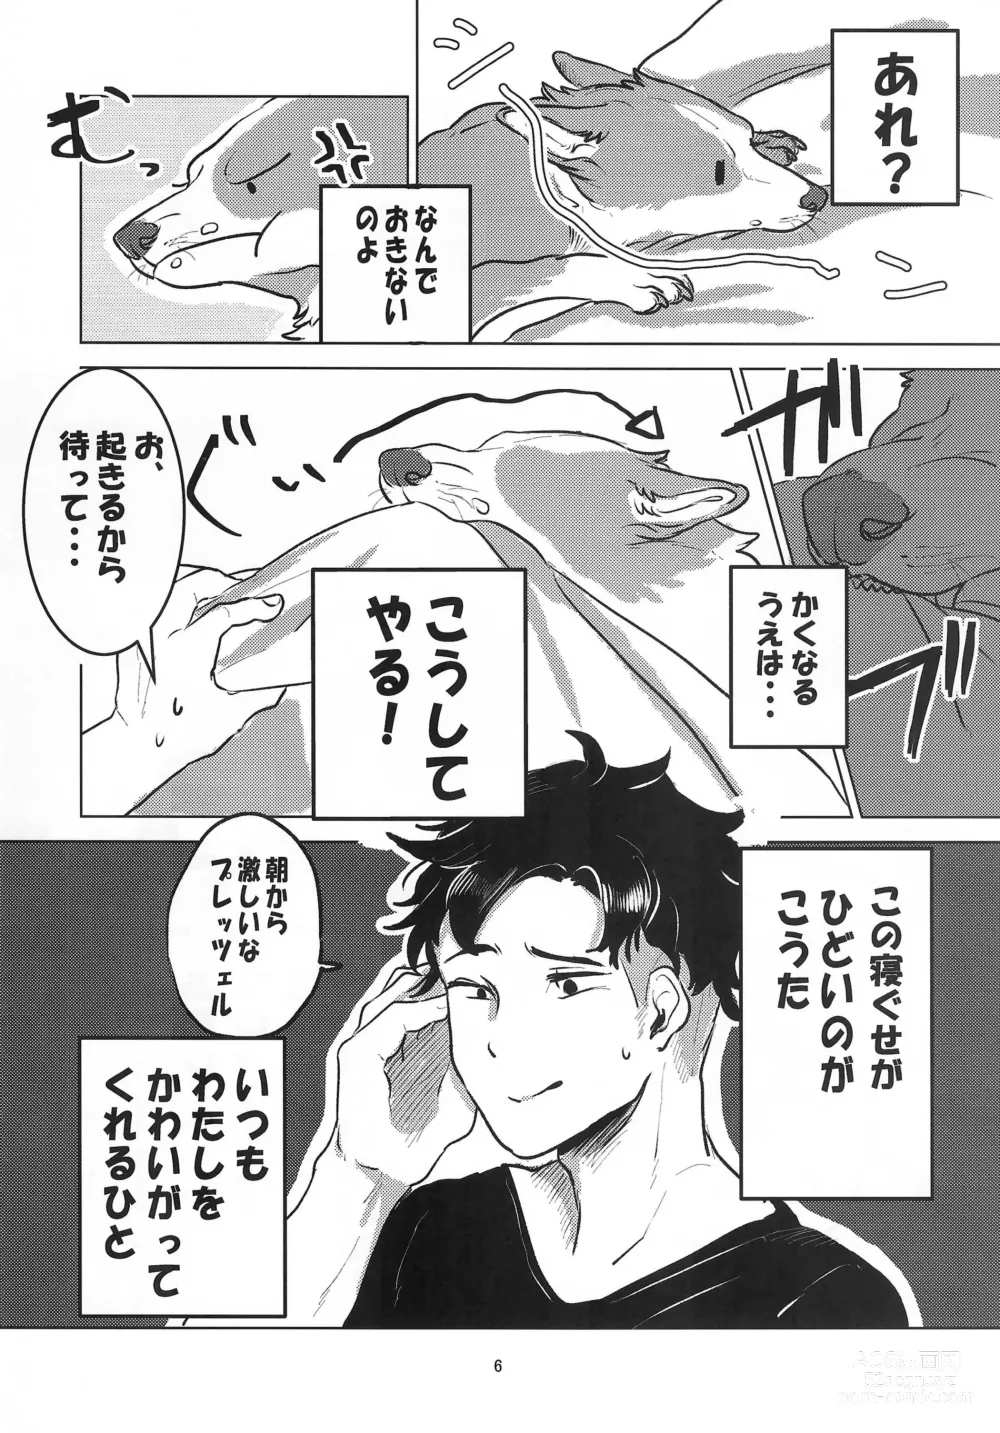 Page 6 of doujinshi Enchanted Bread / Cat No Shuukai Jo